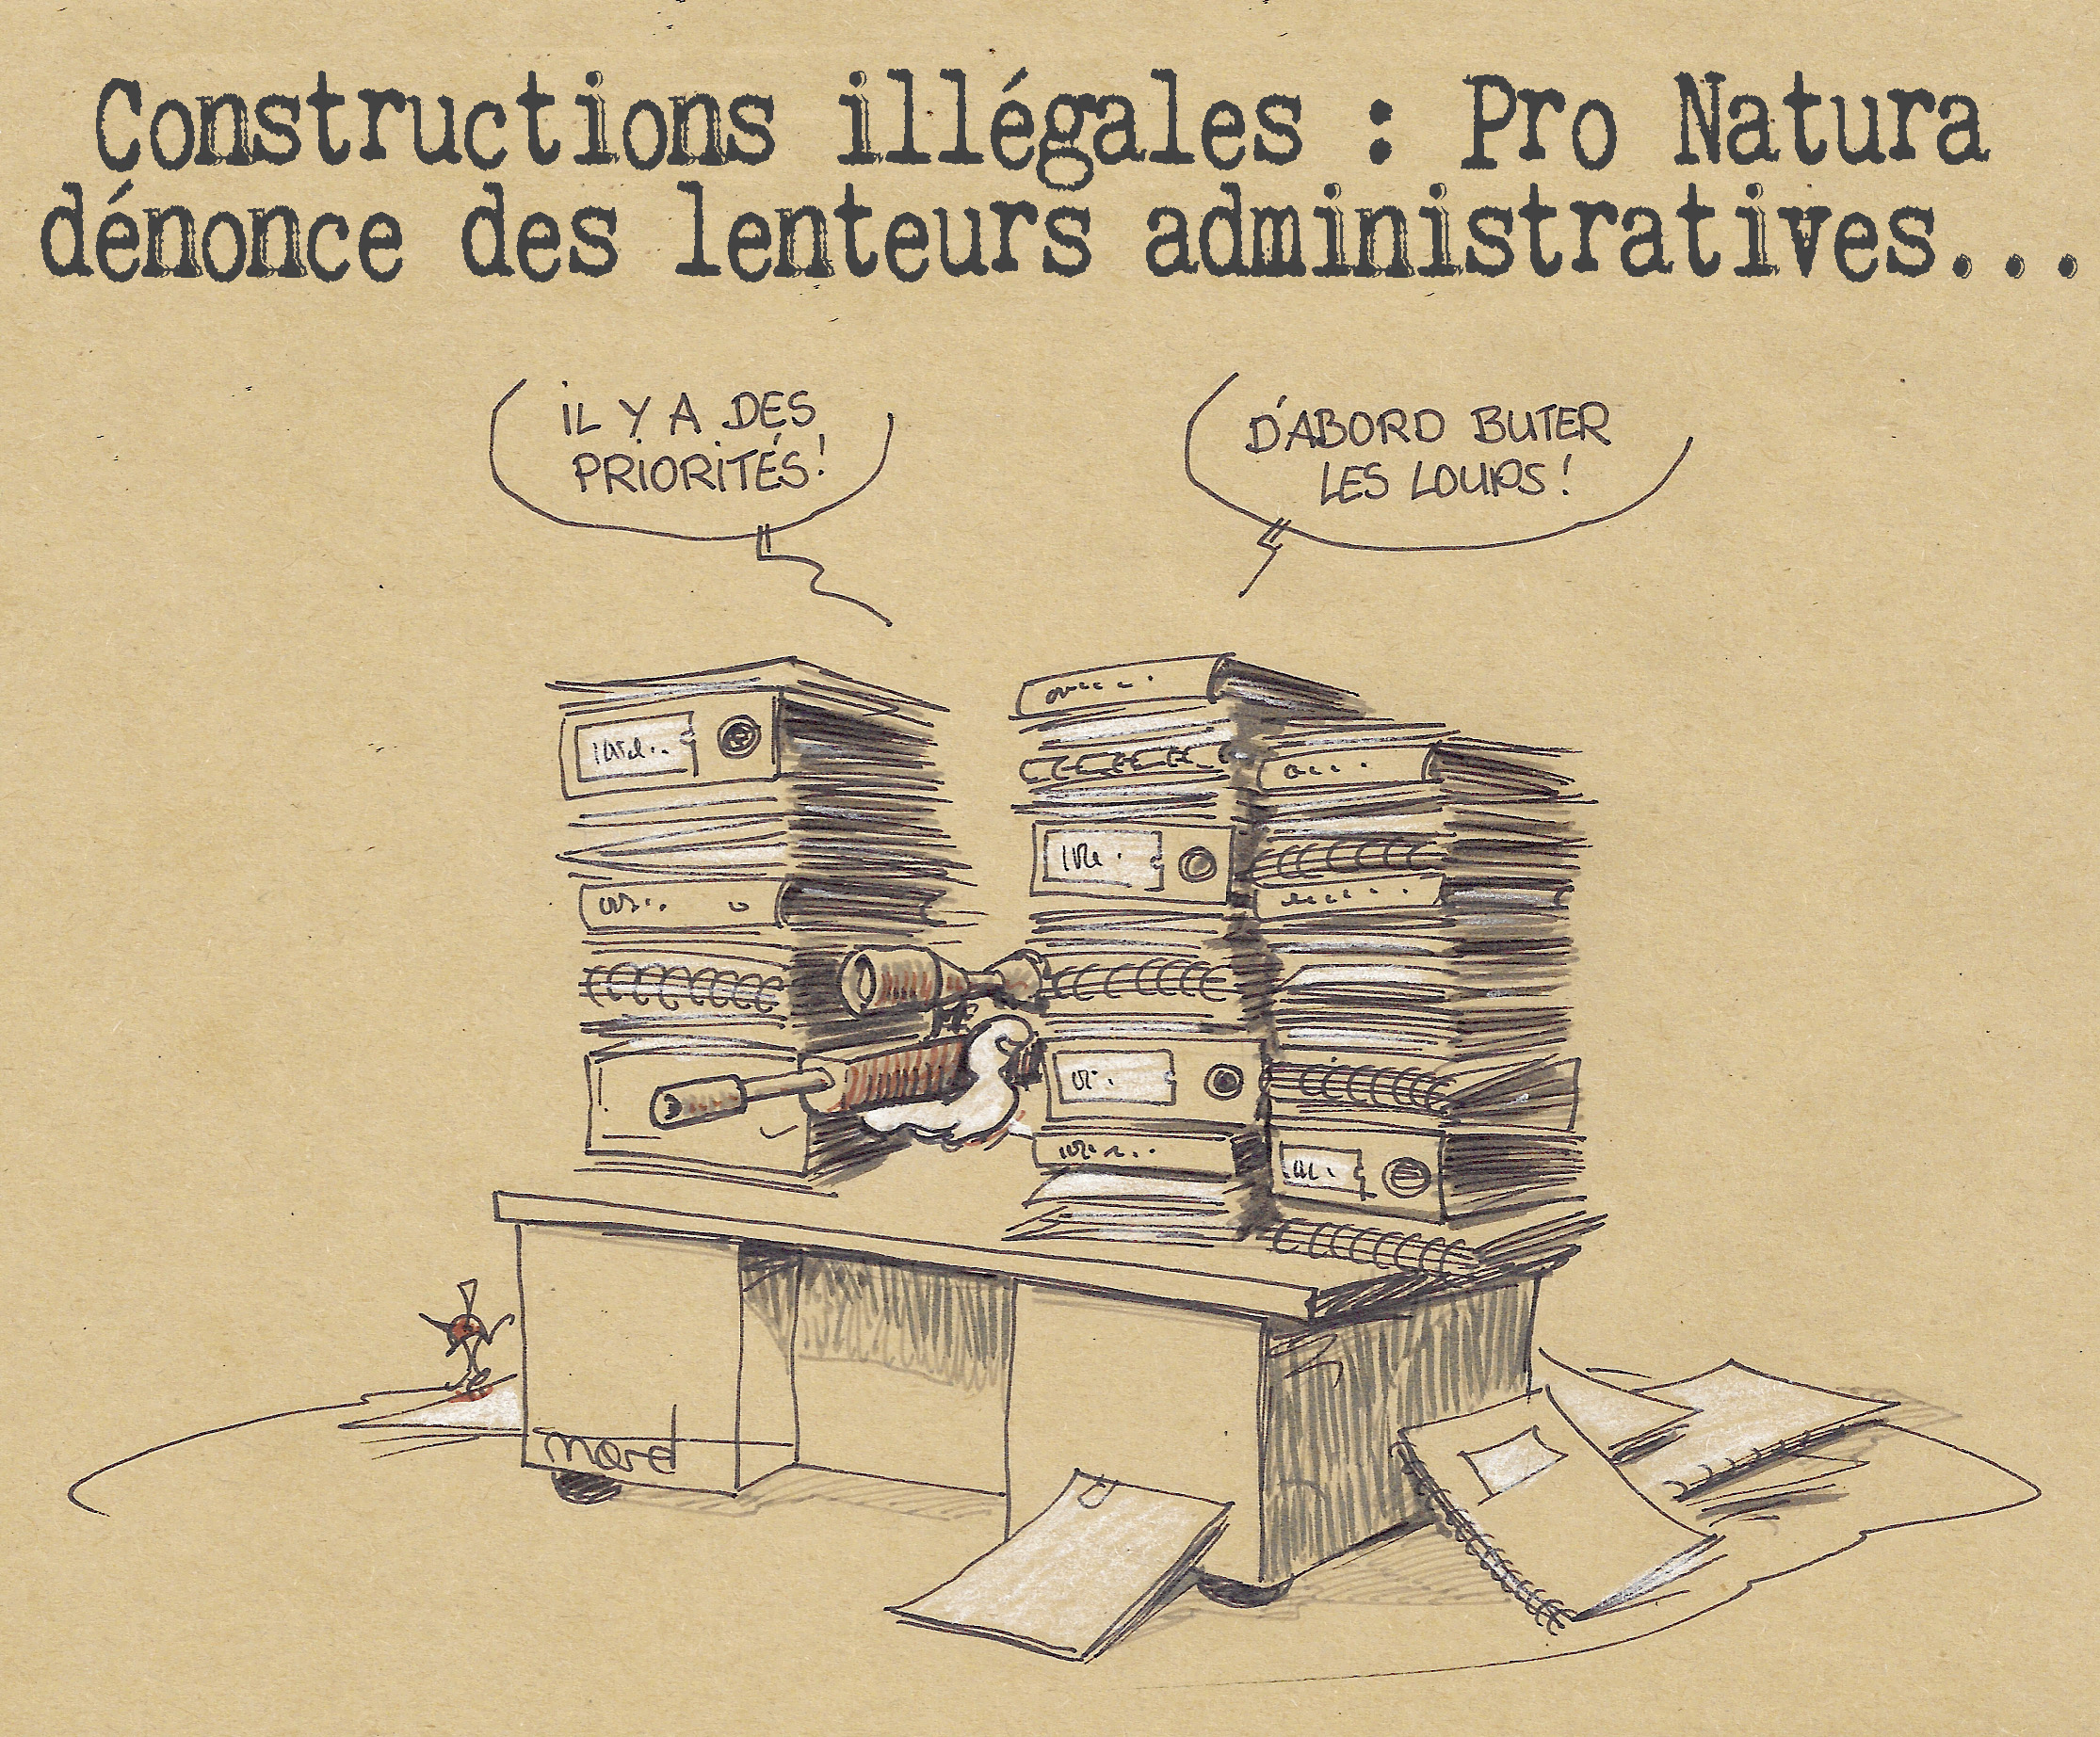 construction illegale pro natura lenteur loup.jpg, janv. 2020